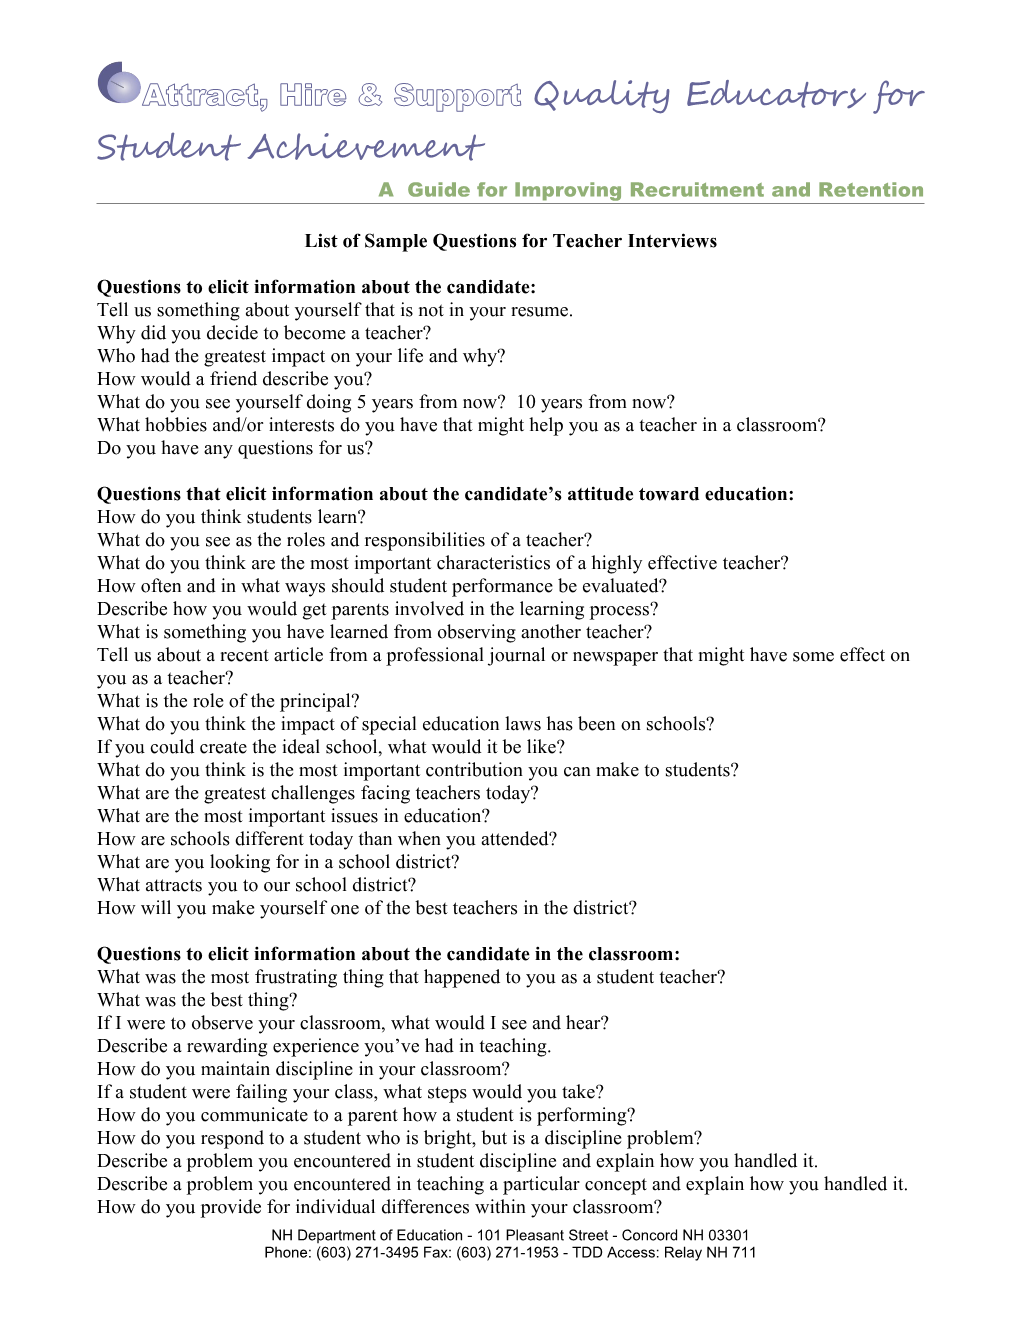 List of Sample Questions for Teacher Interviews